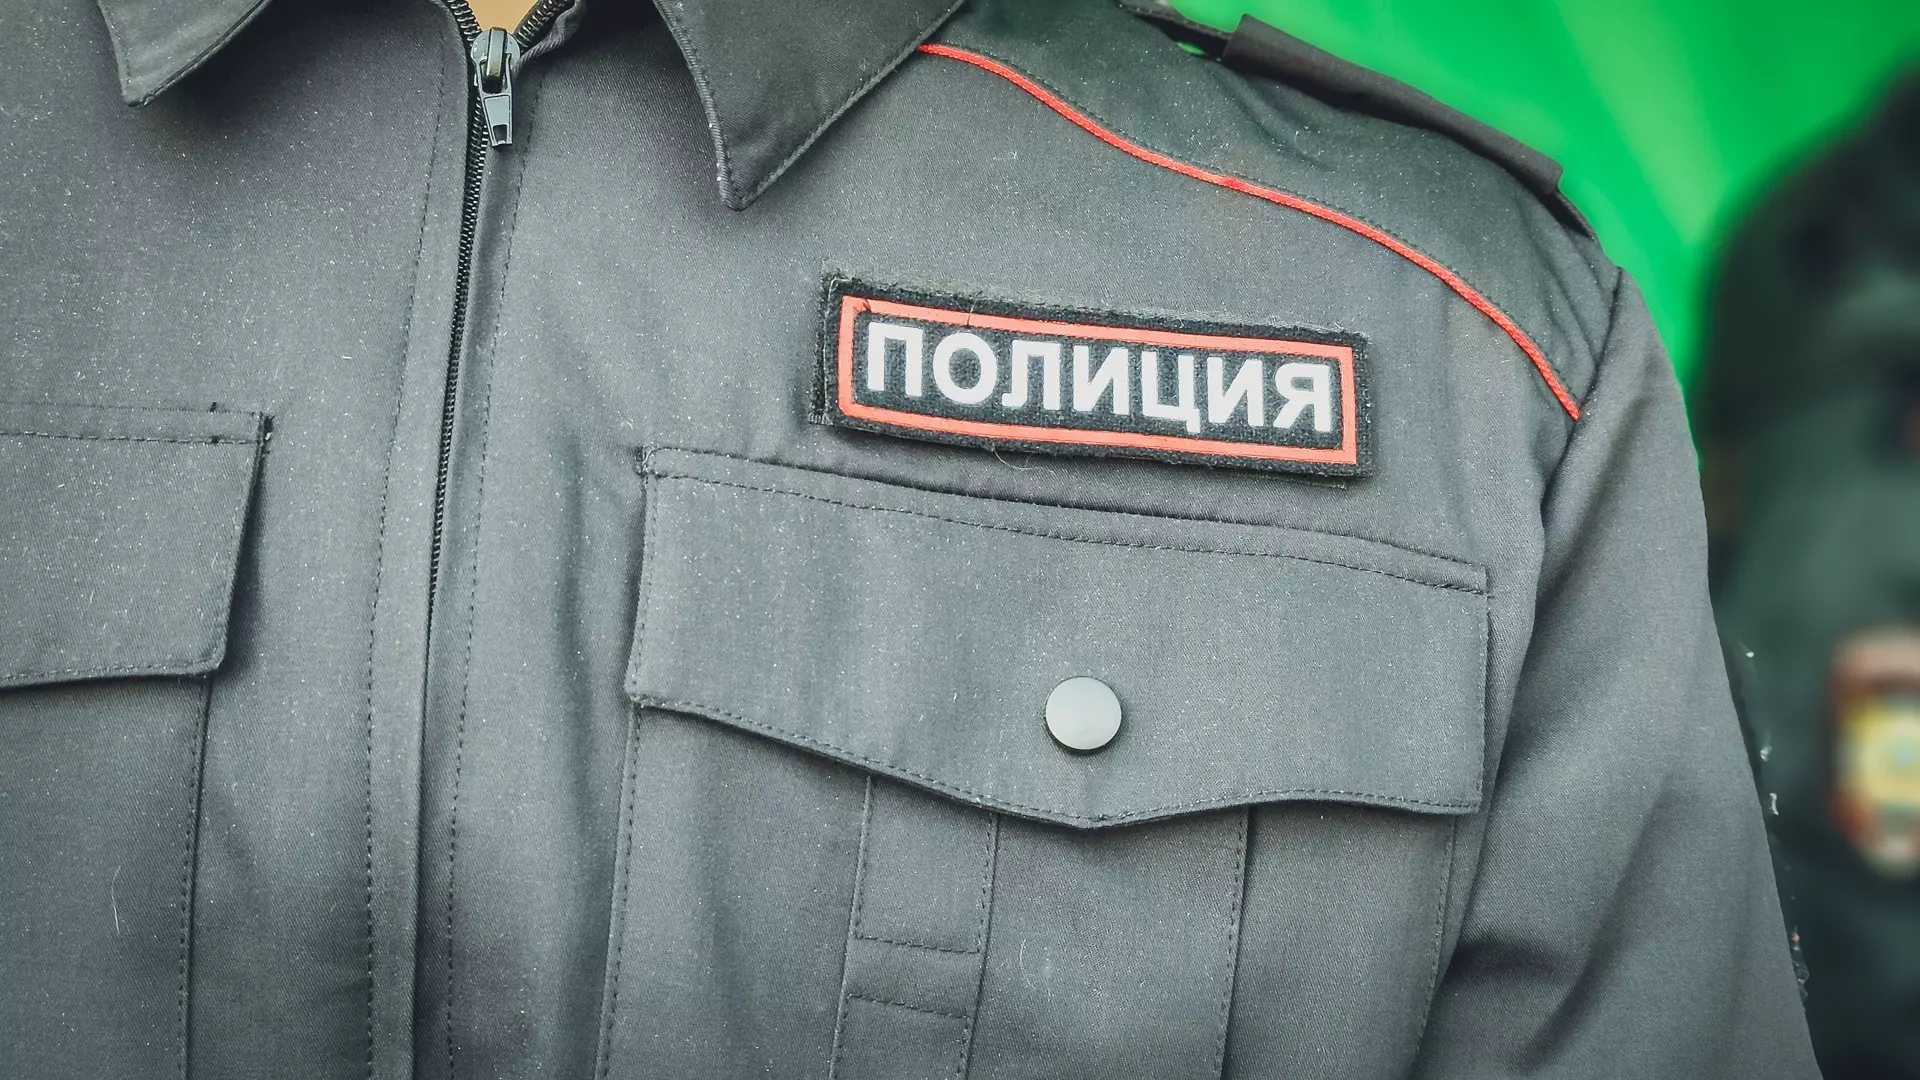 Нижегородца обвинили в дискредитации ВС РФ за антивоенные лозунги